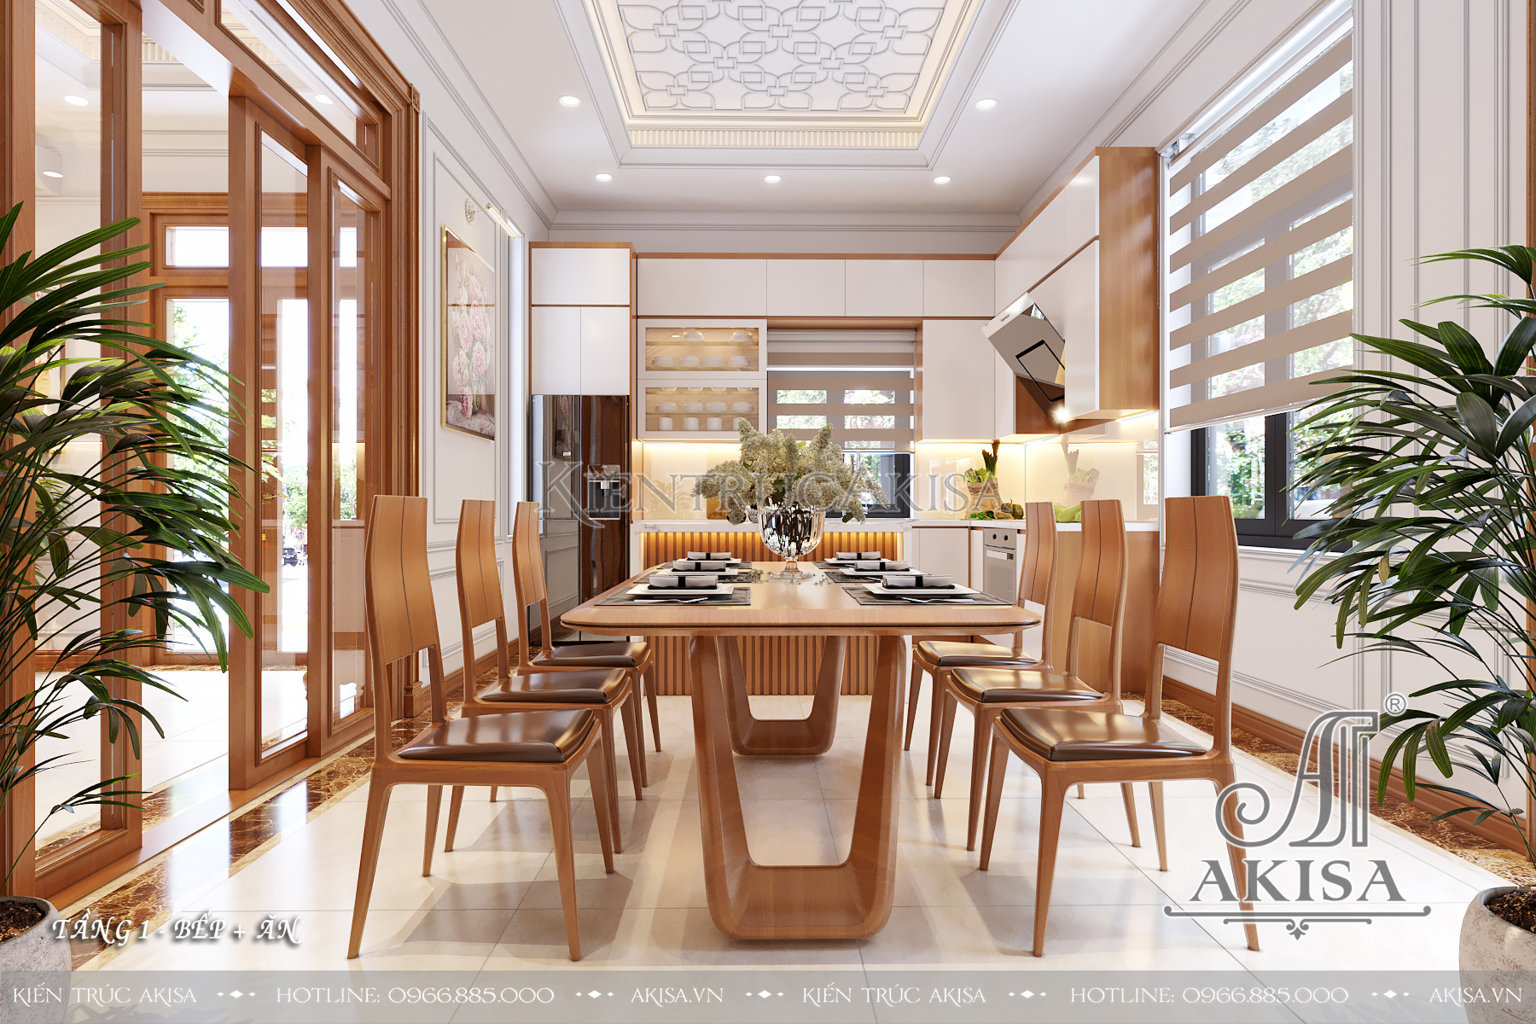 Mẫu nội thất gỗ tự nhiên cho biệt thự 2 tầng - bếp ăn